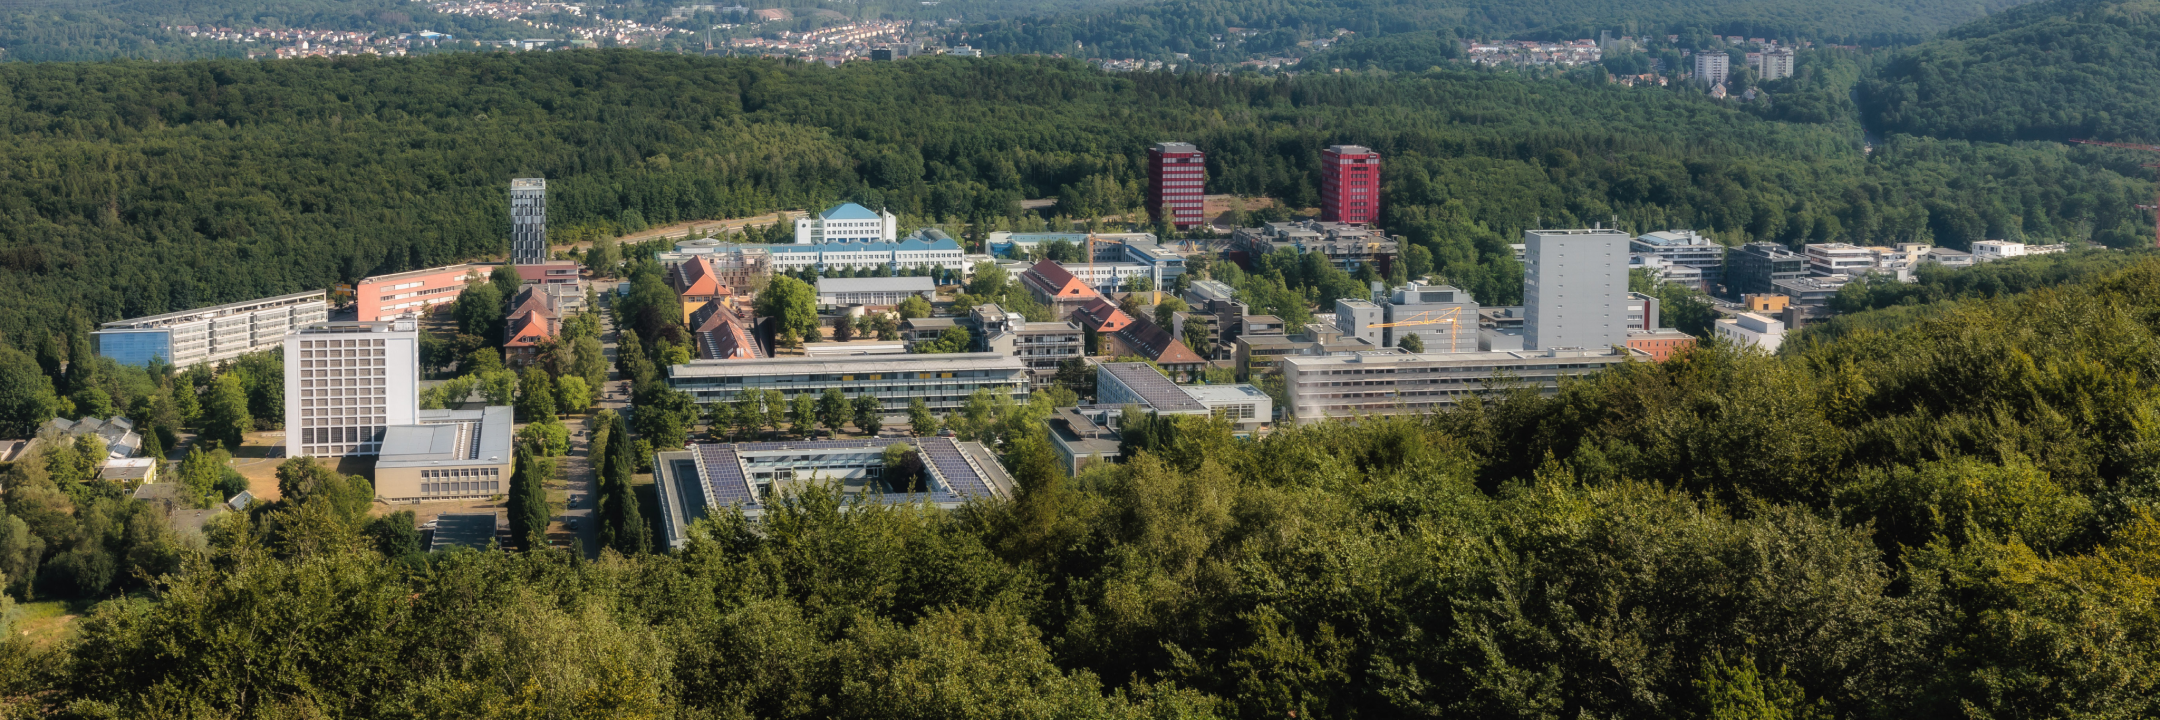 Universität des Saarlandes, Saarbrücken